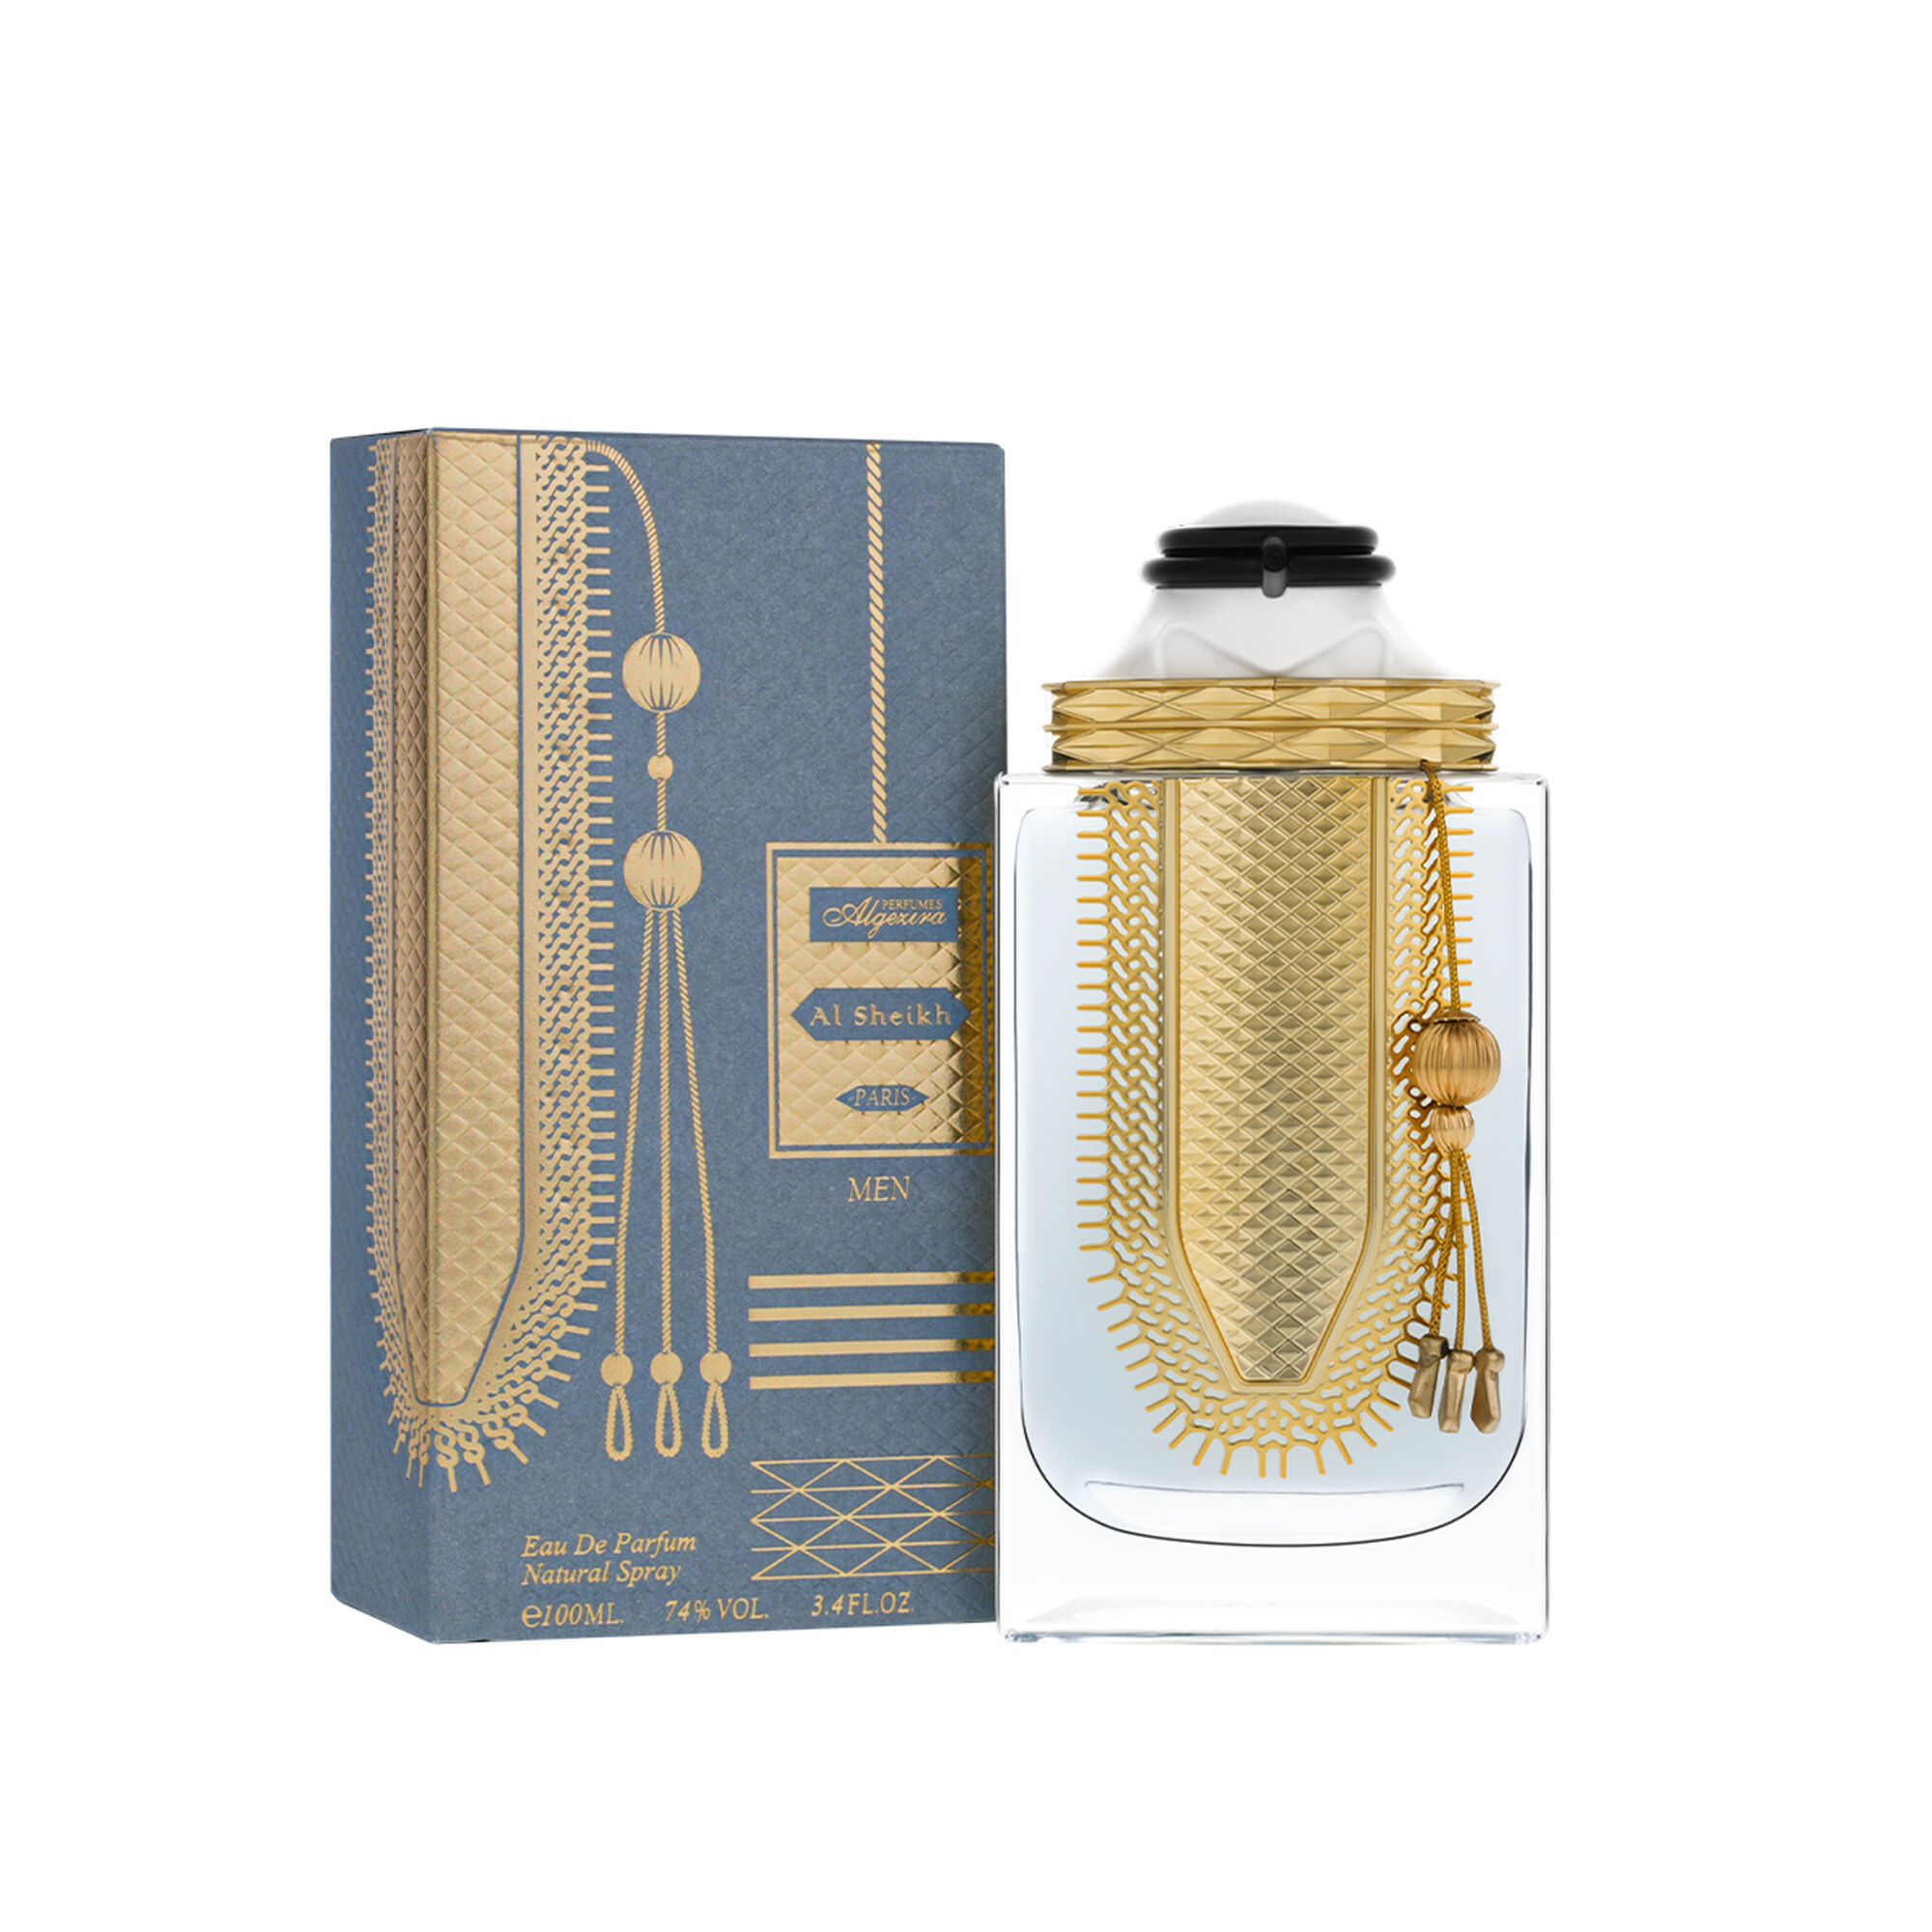 Al-Sheikh grey perfume for men 100 ml